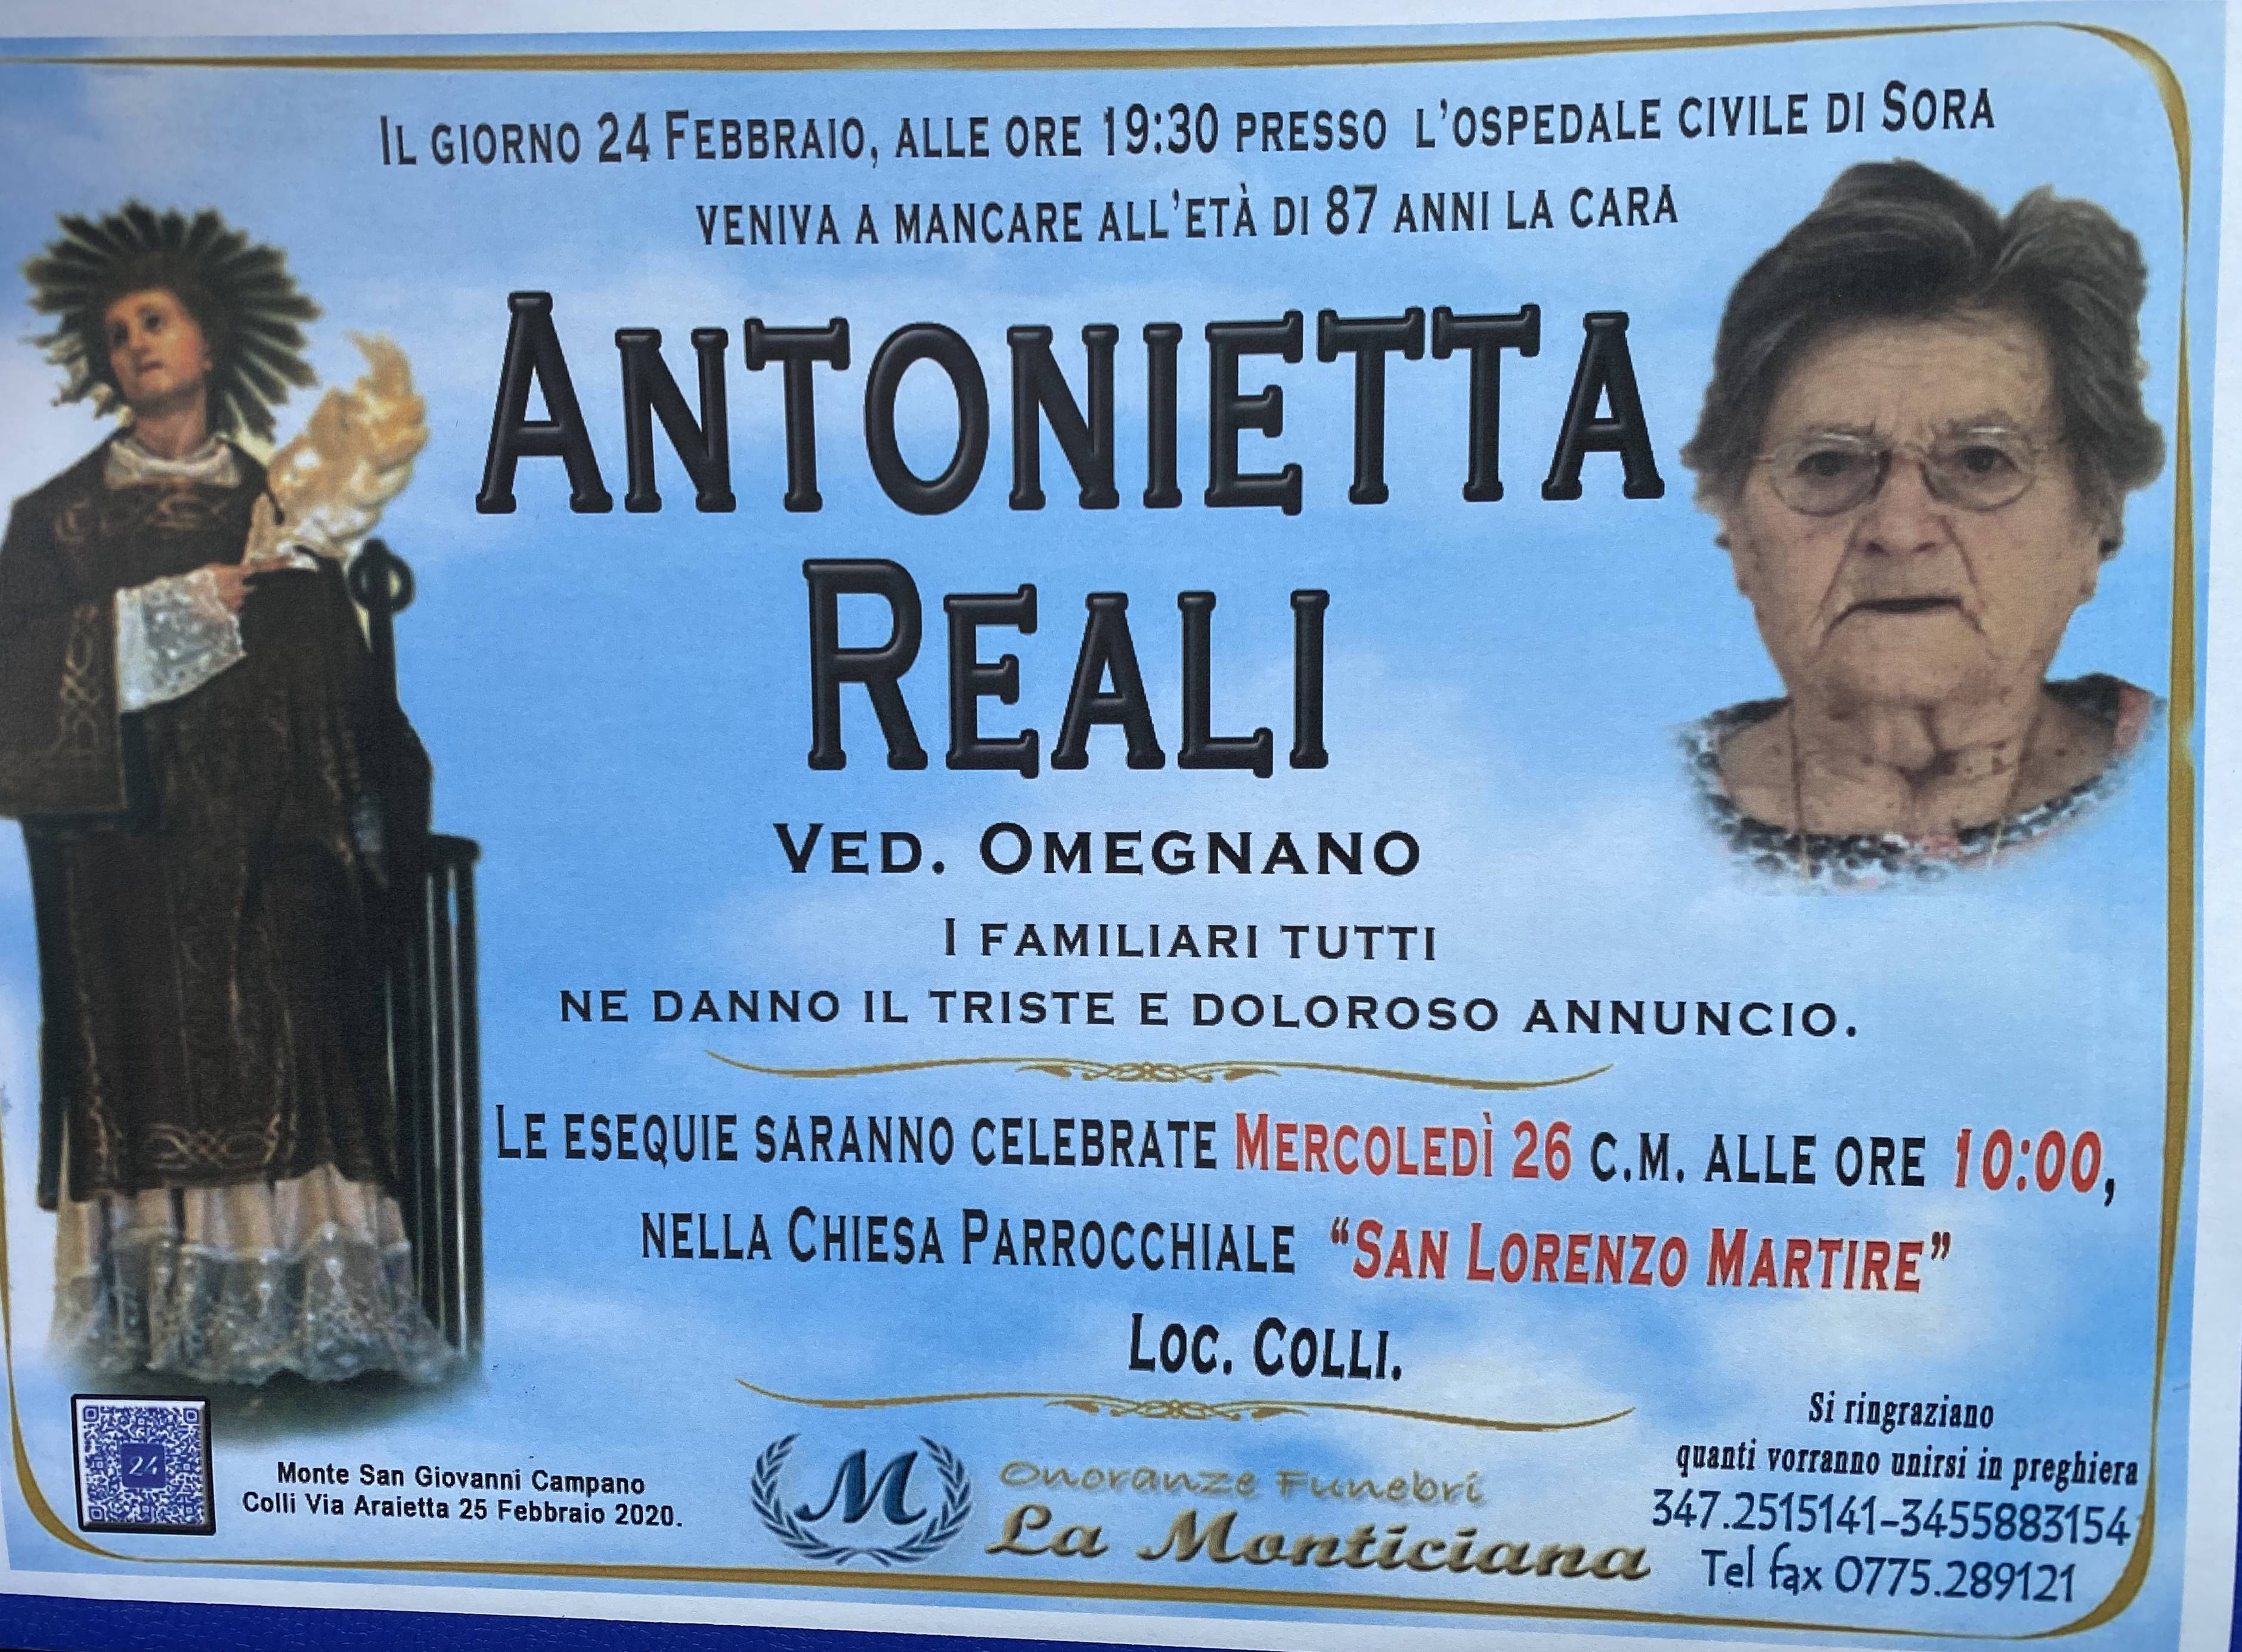 Antonietta Reali